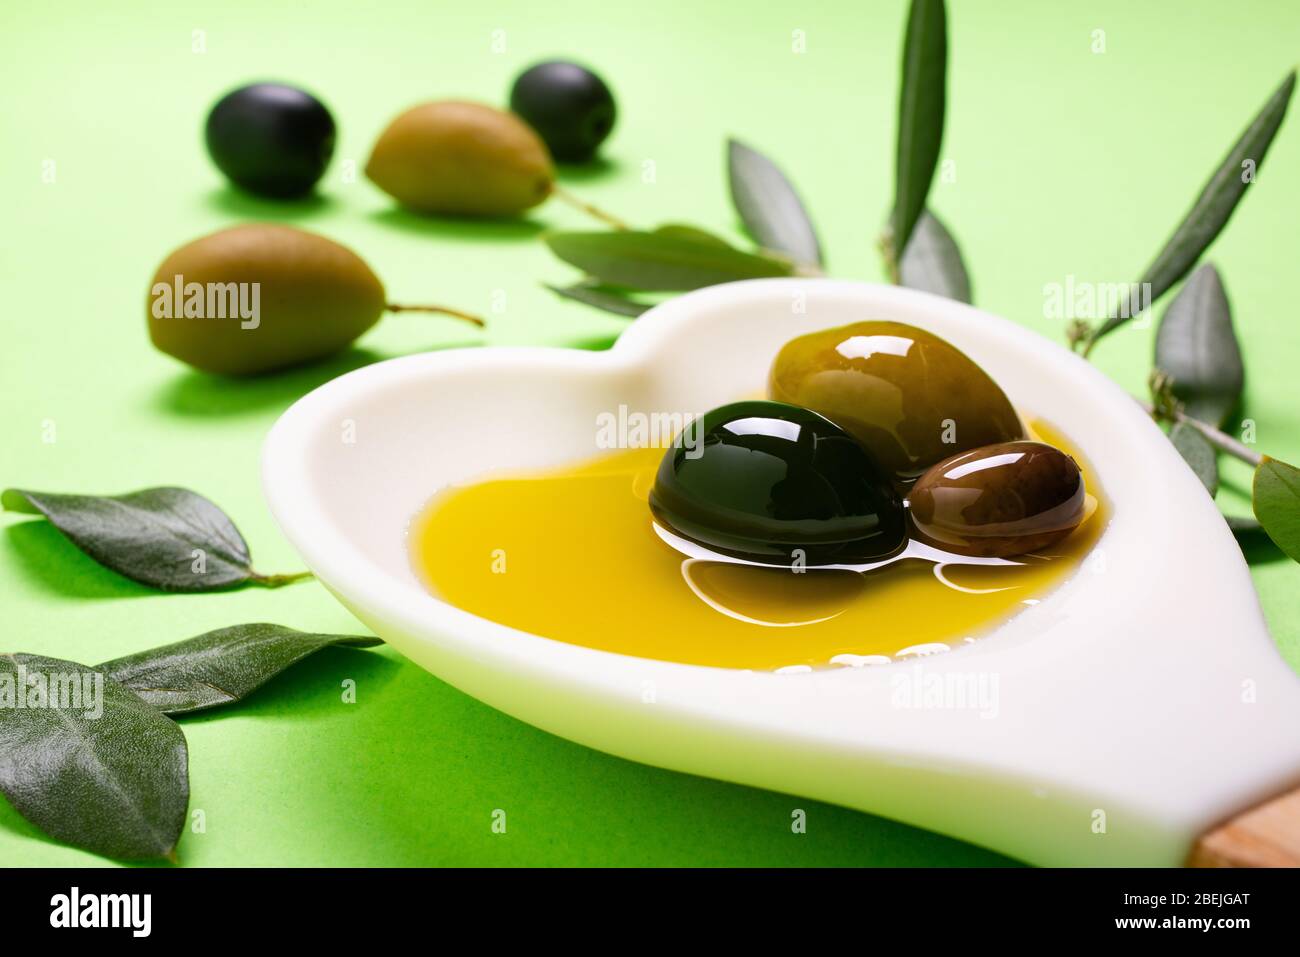 au premier plan, dans la cuillère blanche en forme de coeur quelques olives avec de l'huile d'olive extra vierge Banque D'Images